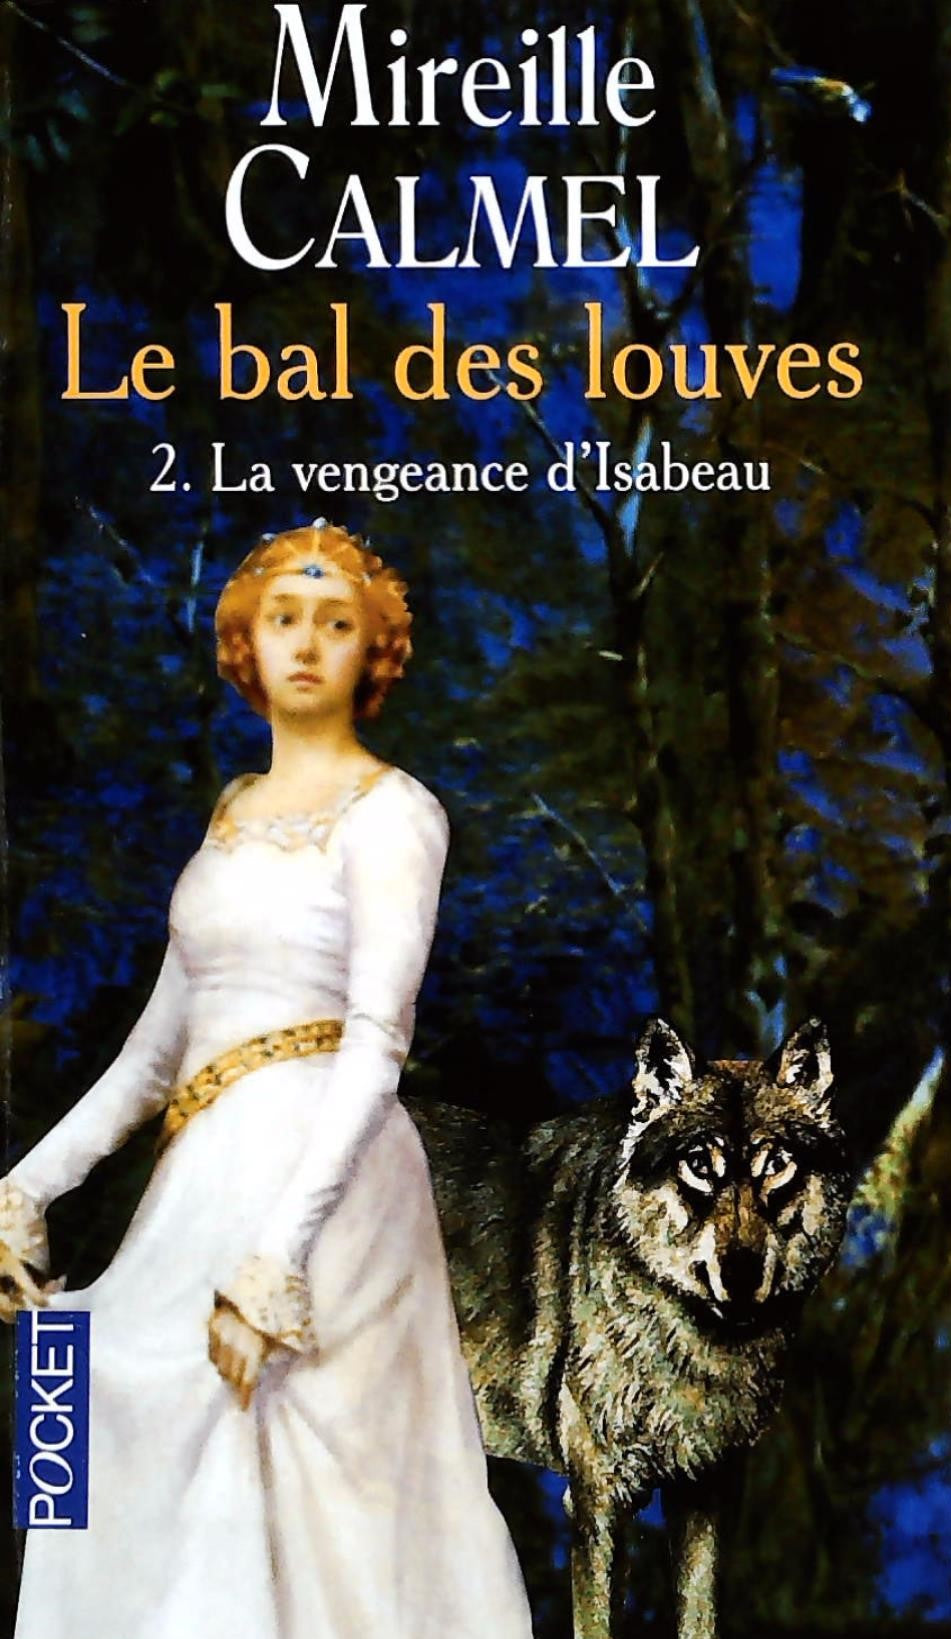 Livre ISBN 2266141511 Le bal des louves # 2 : La veangeance d'Isabeau (Mireille Calmel)